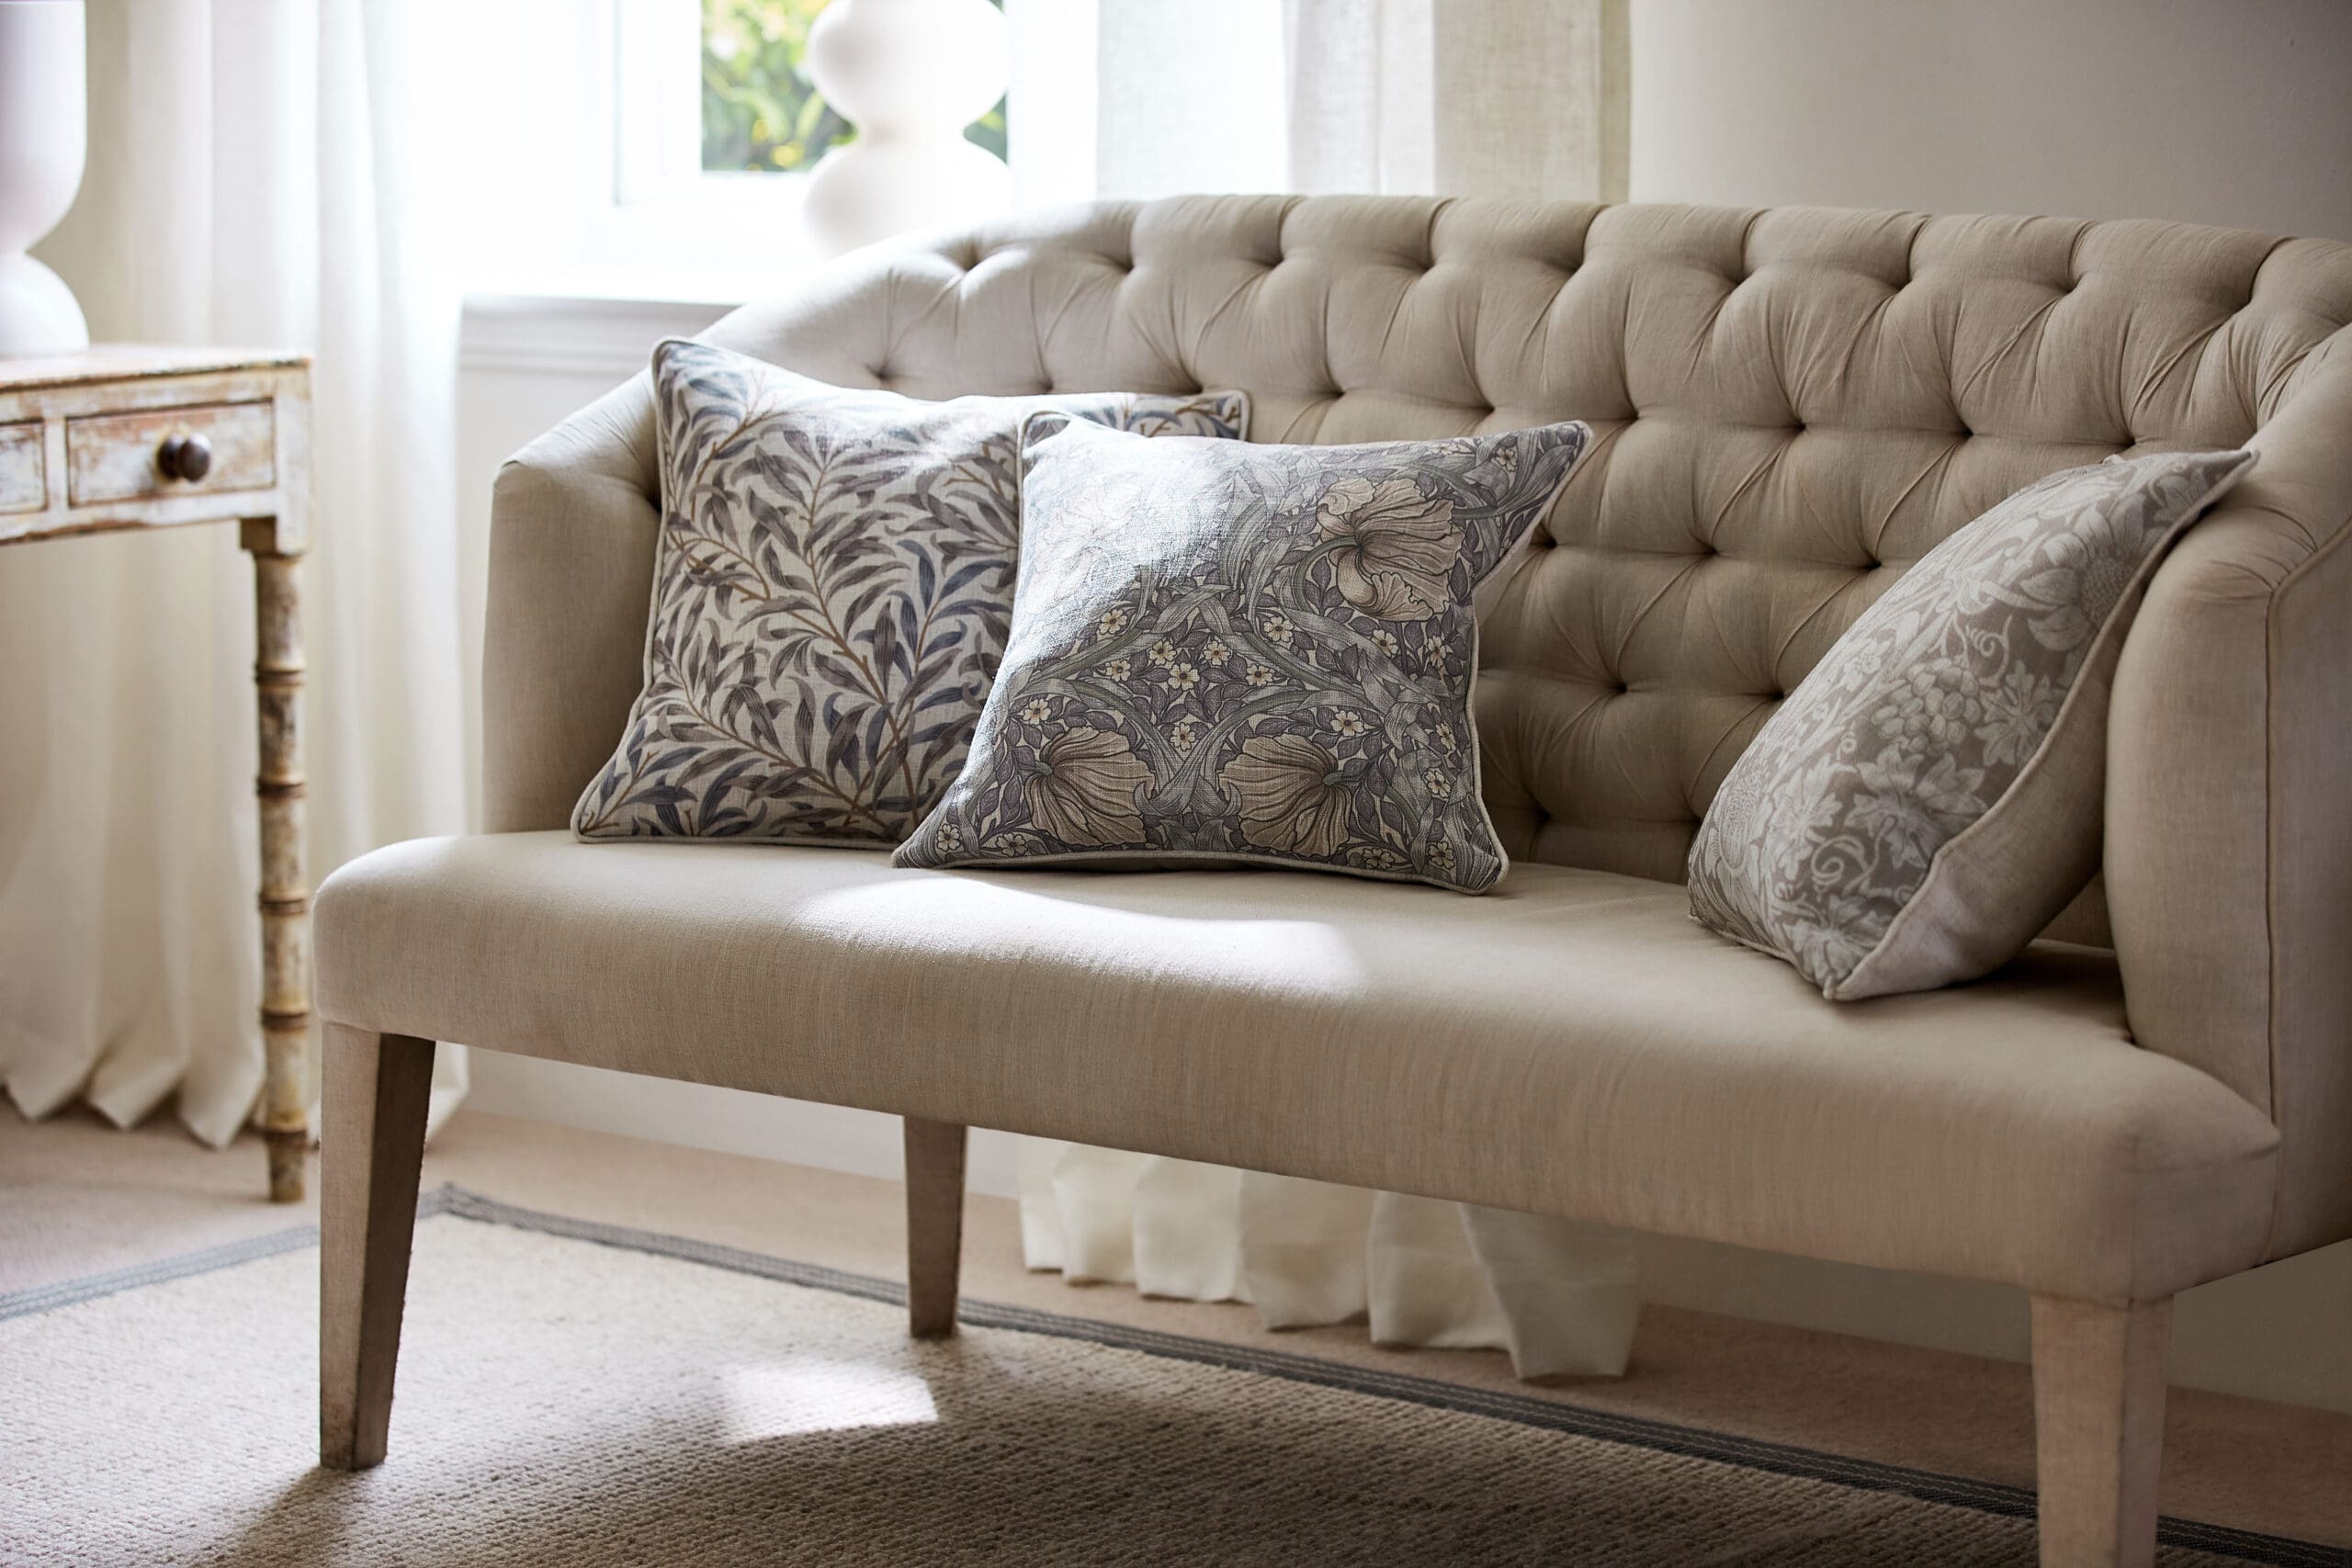 William Morris Cushions